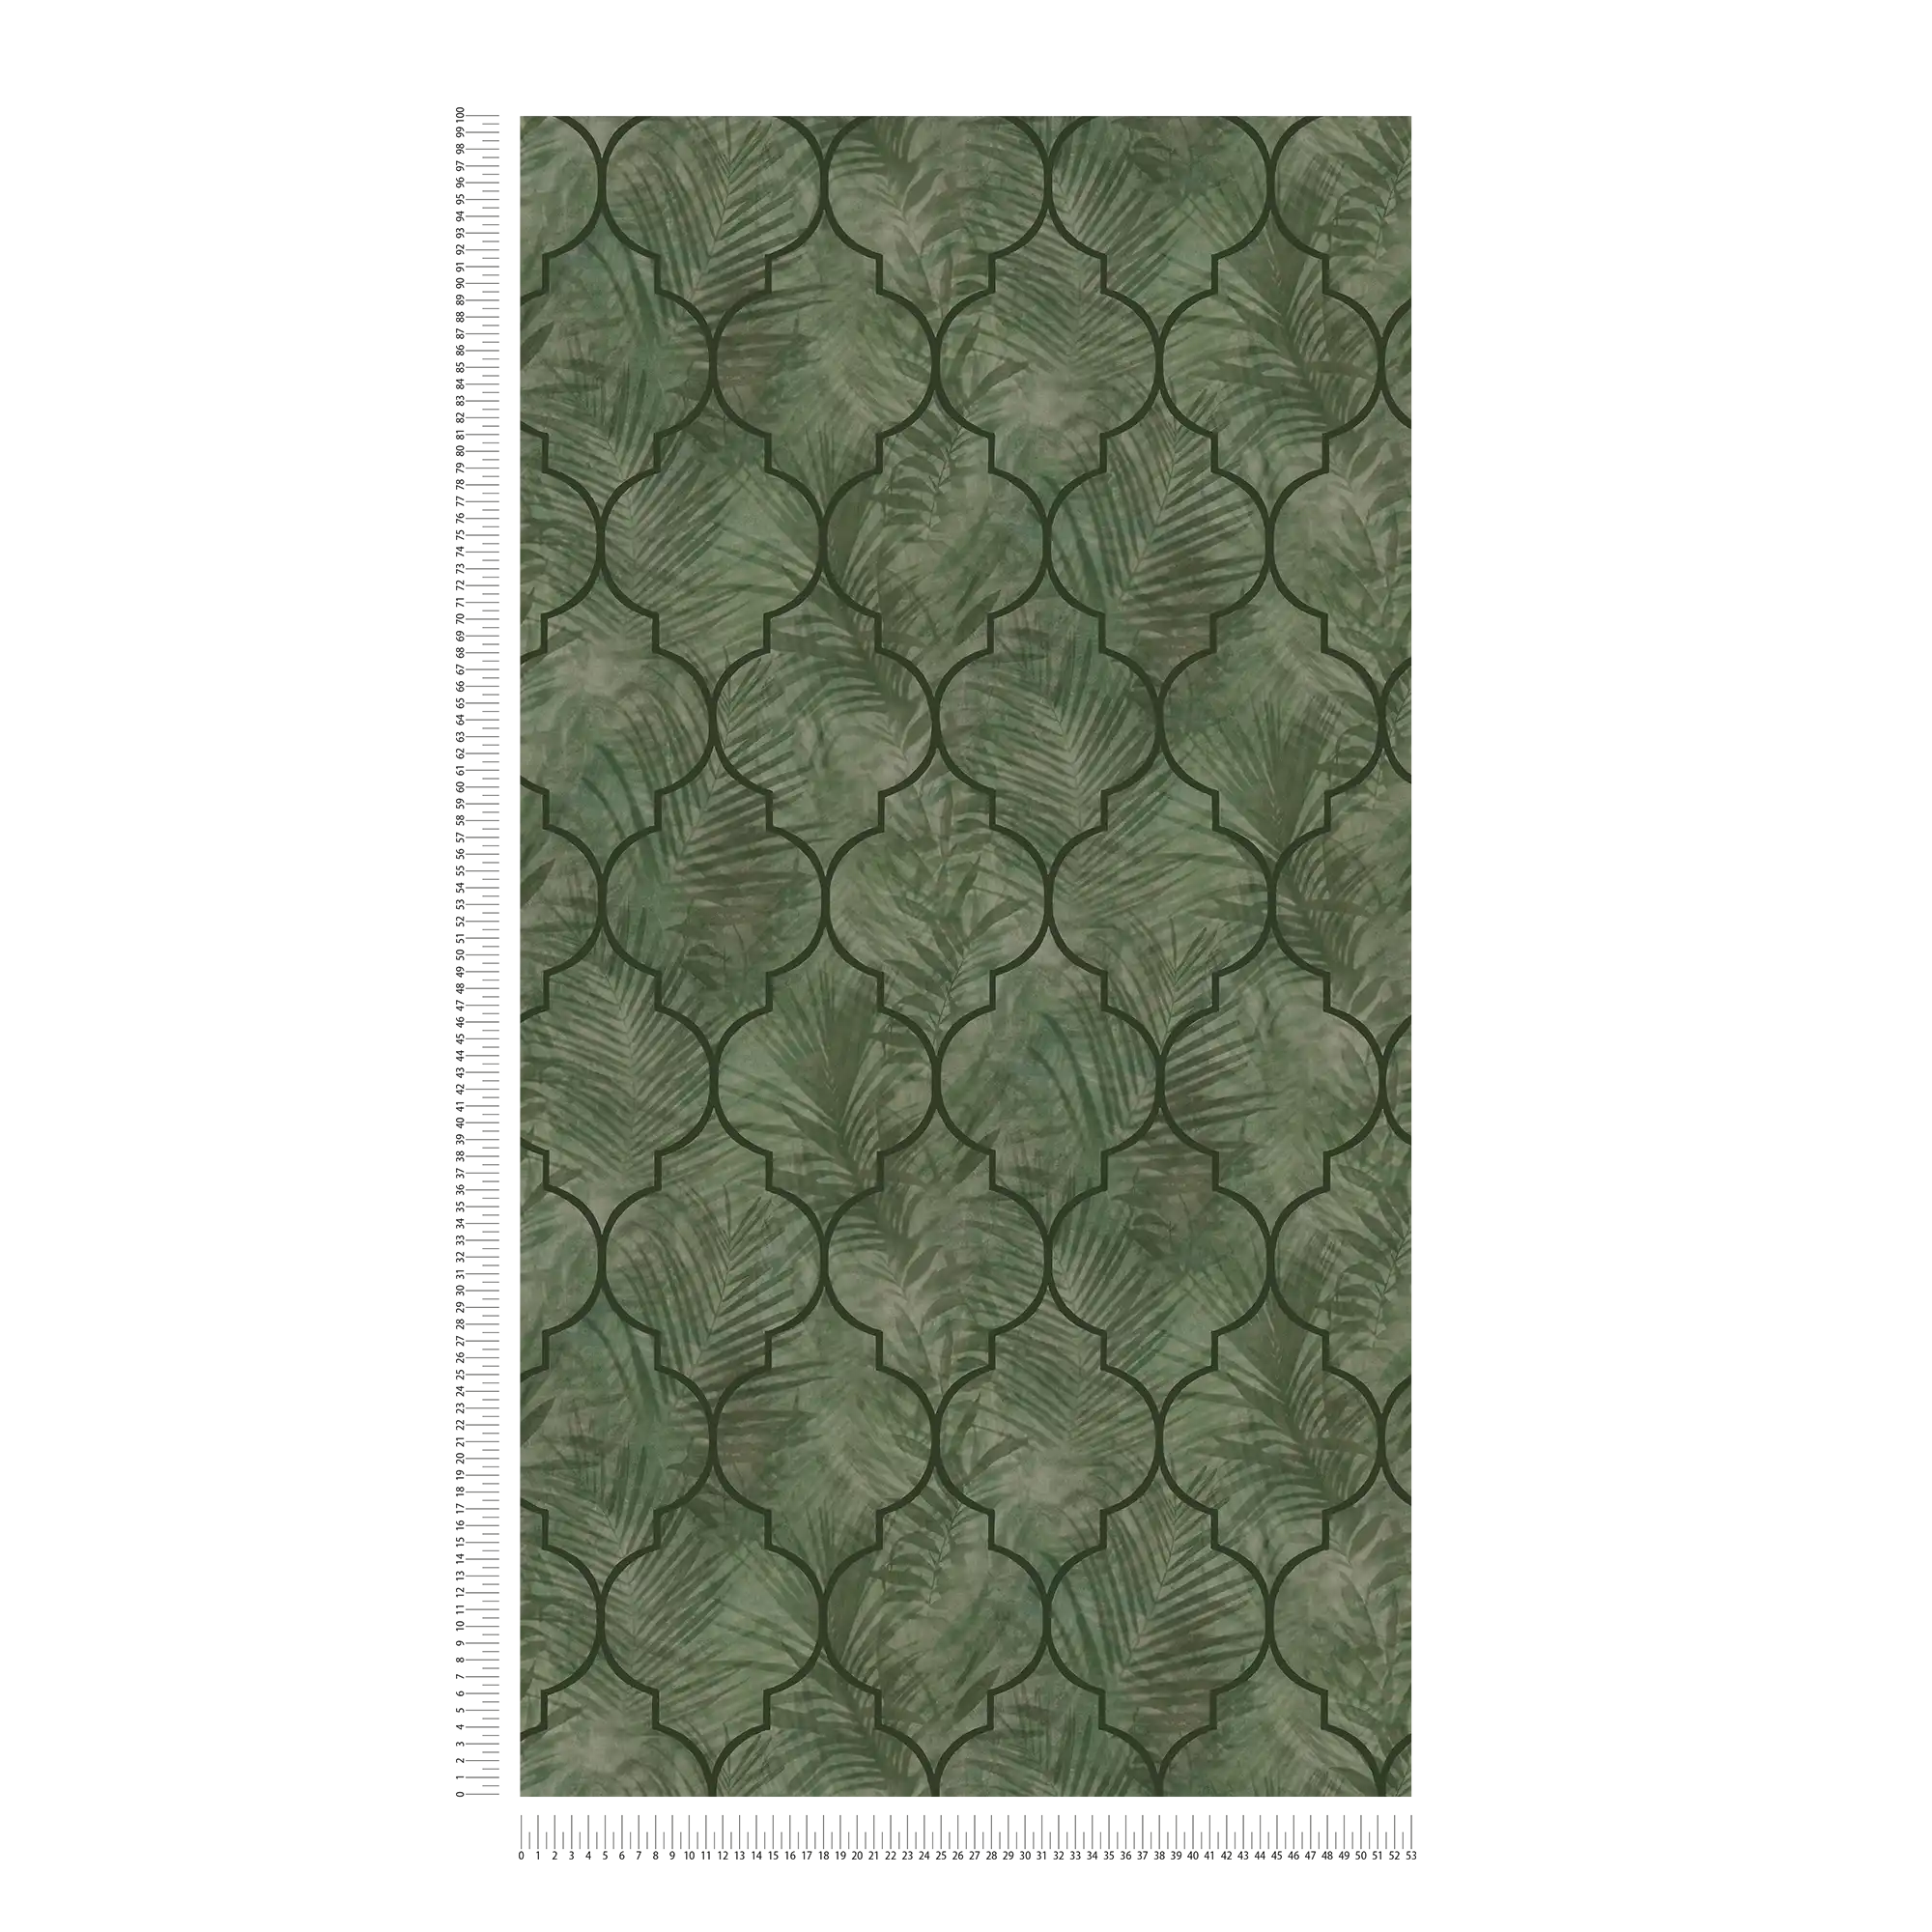             Papel pintado no tejido con motivo de hojas en aspecto de baldosa - verde
        